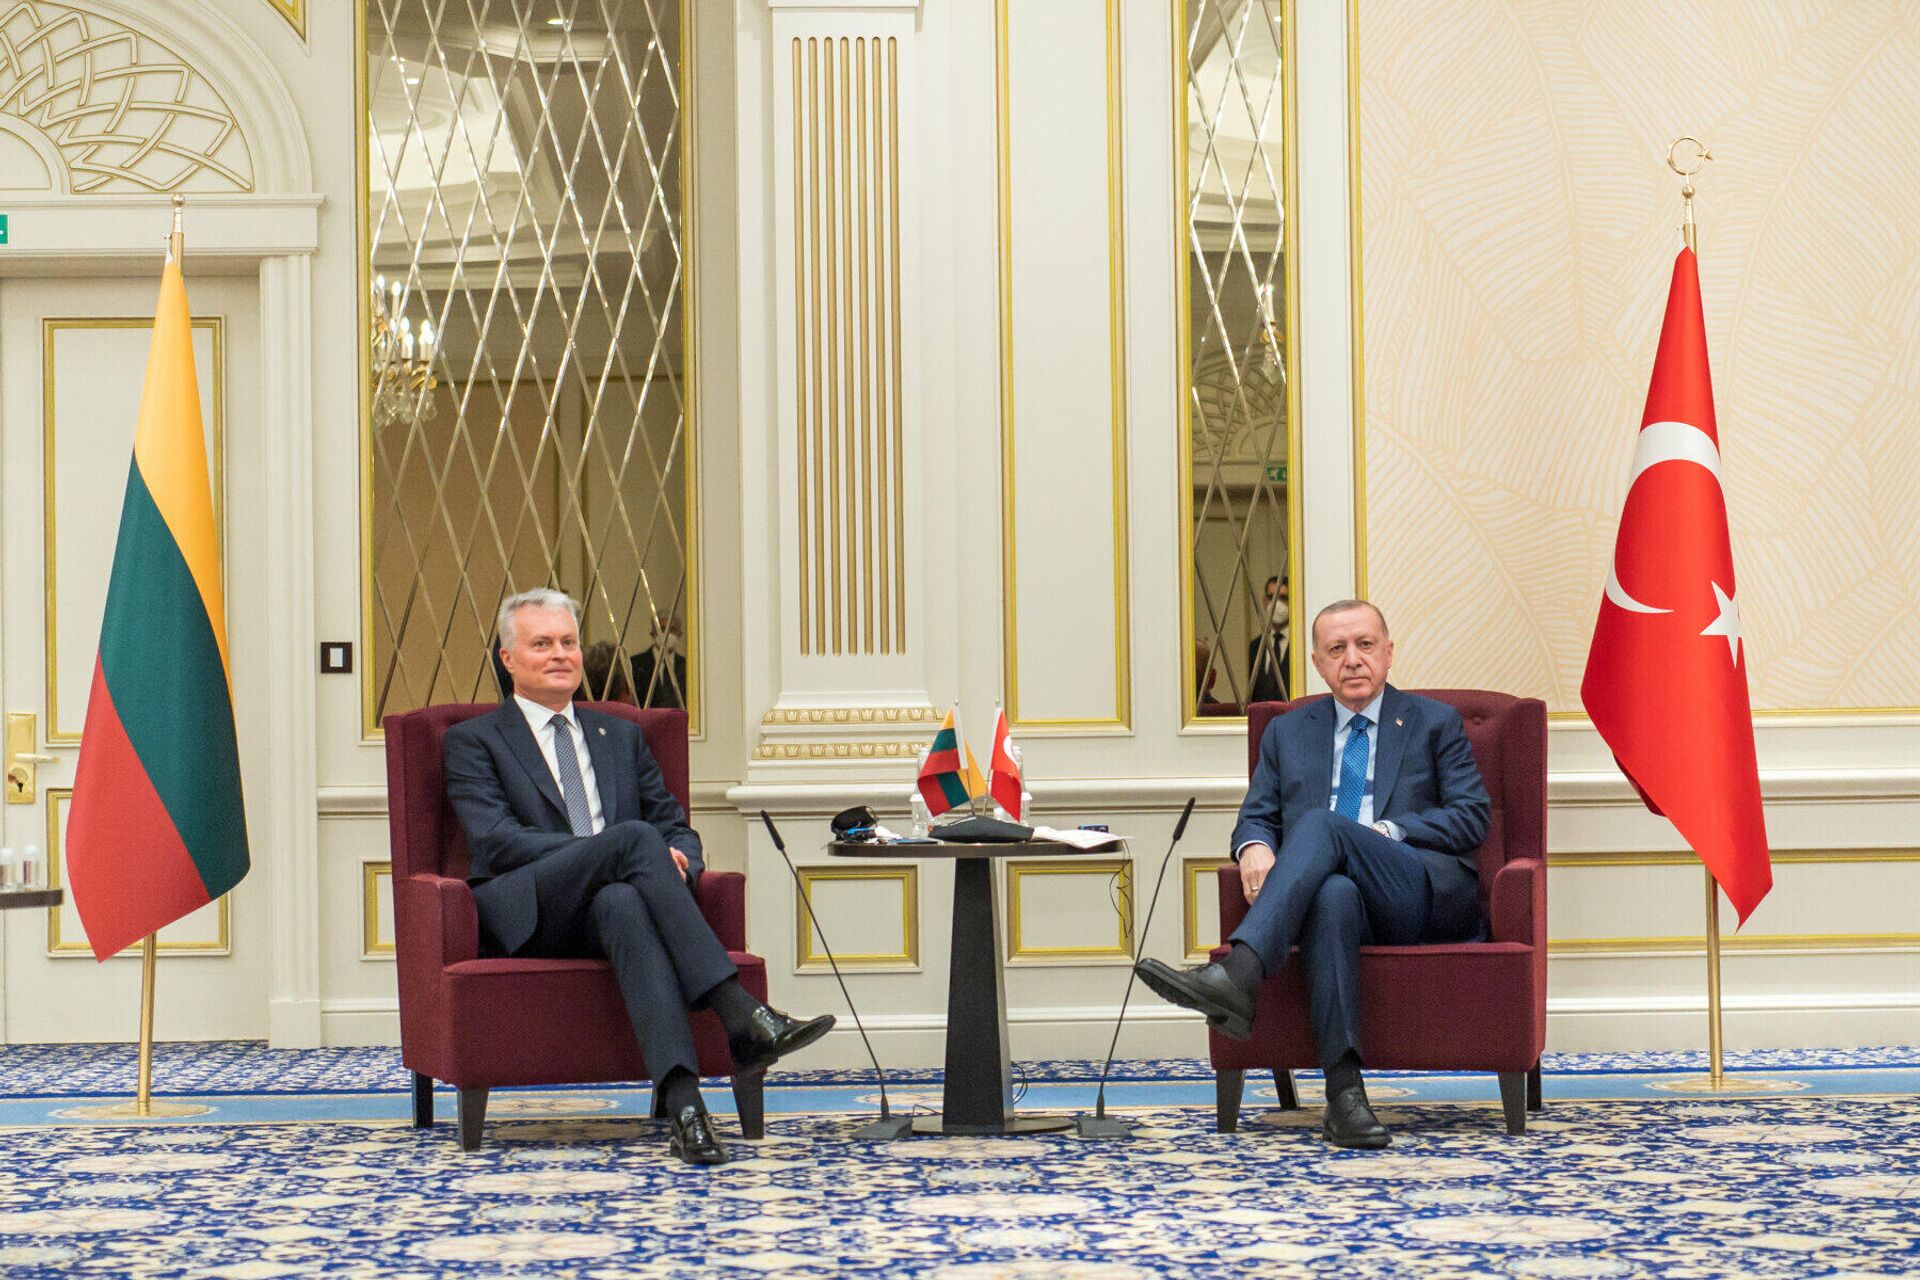 Встреча президента Литвы Гитанаса Науседы с президентом Турции Реджепом Тайипом Эрдоганом - Sputnik Lietuva, 1920, 14.06.2021